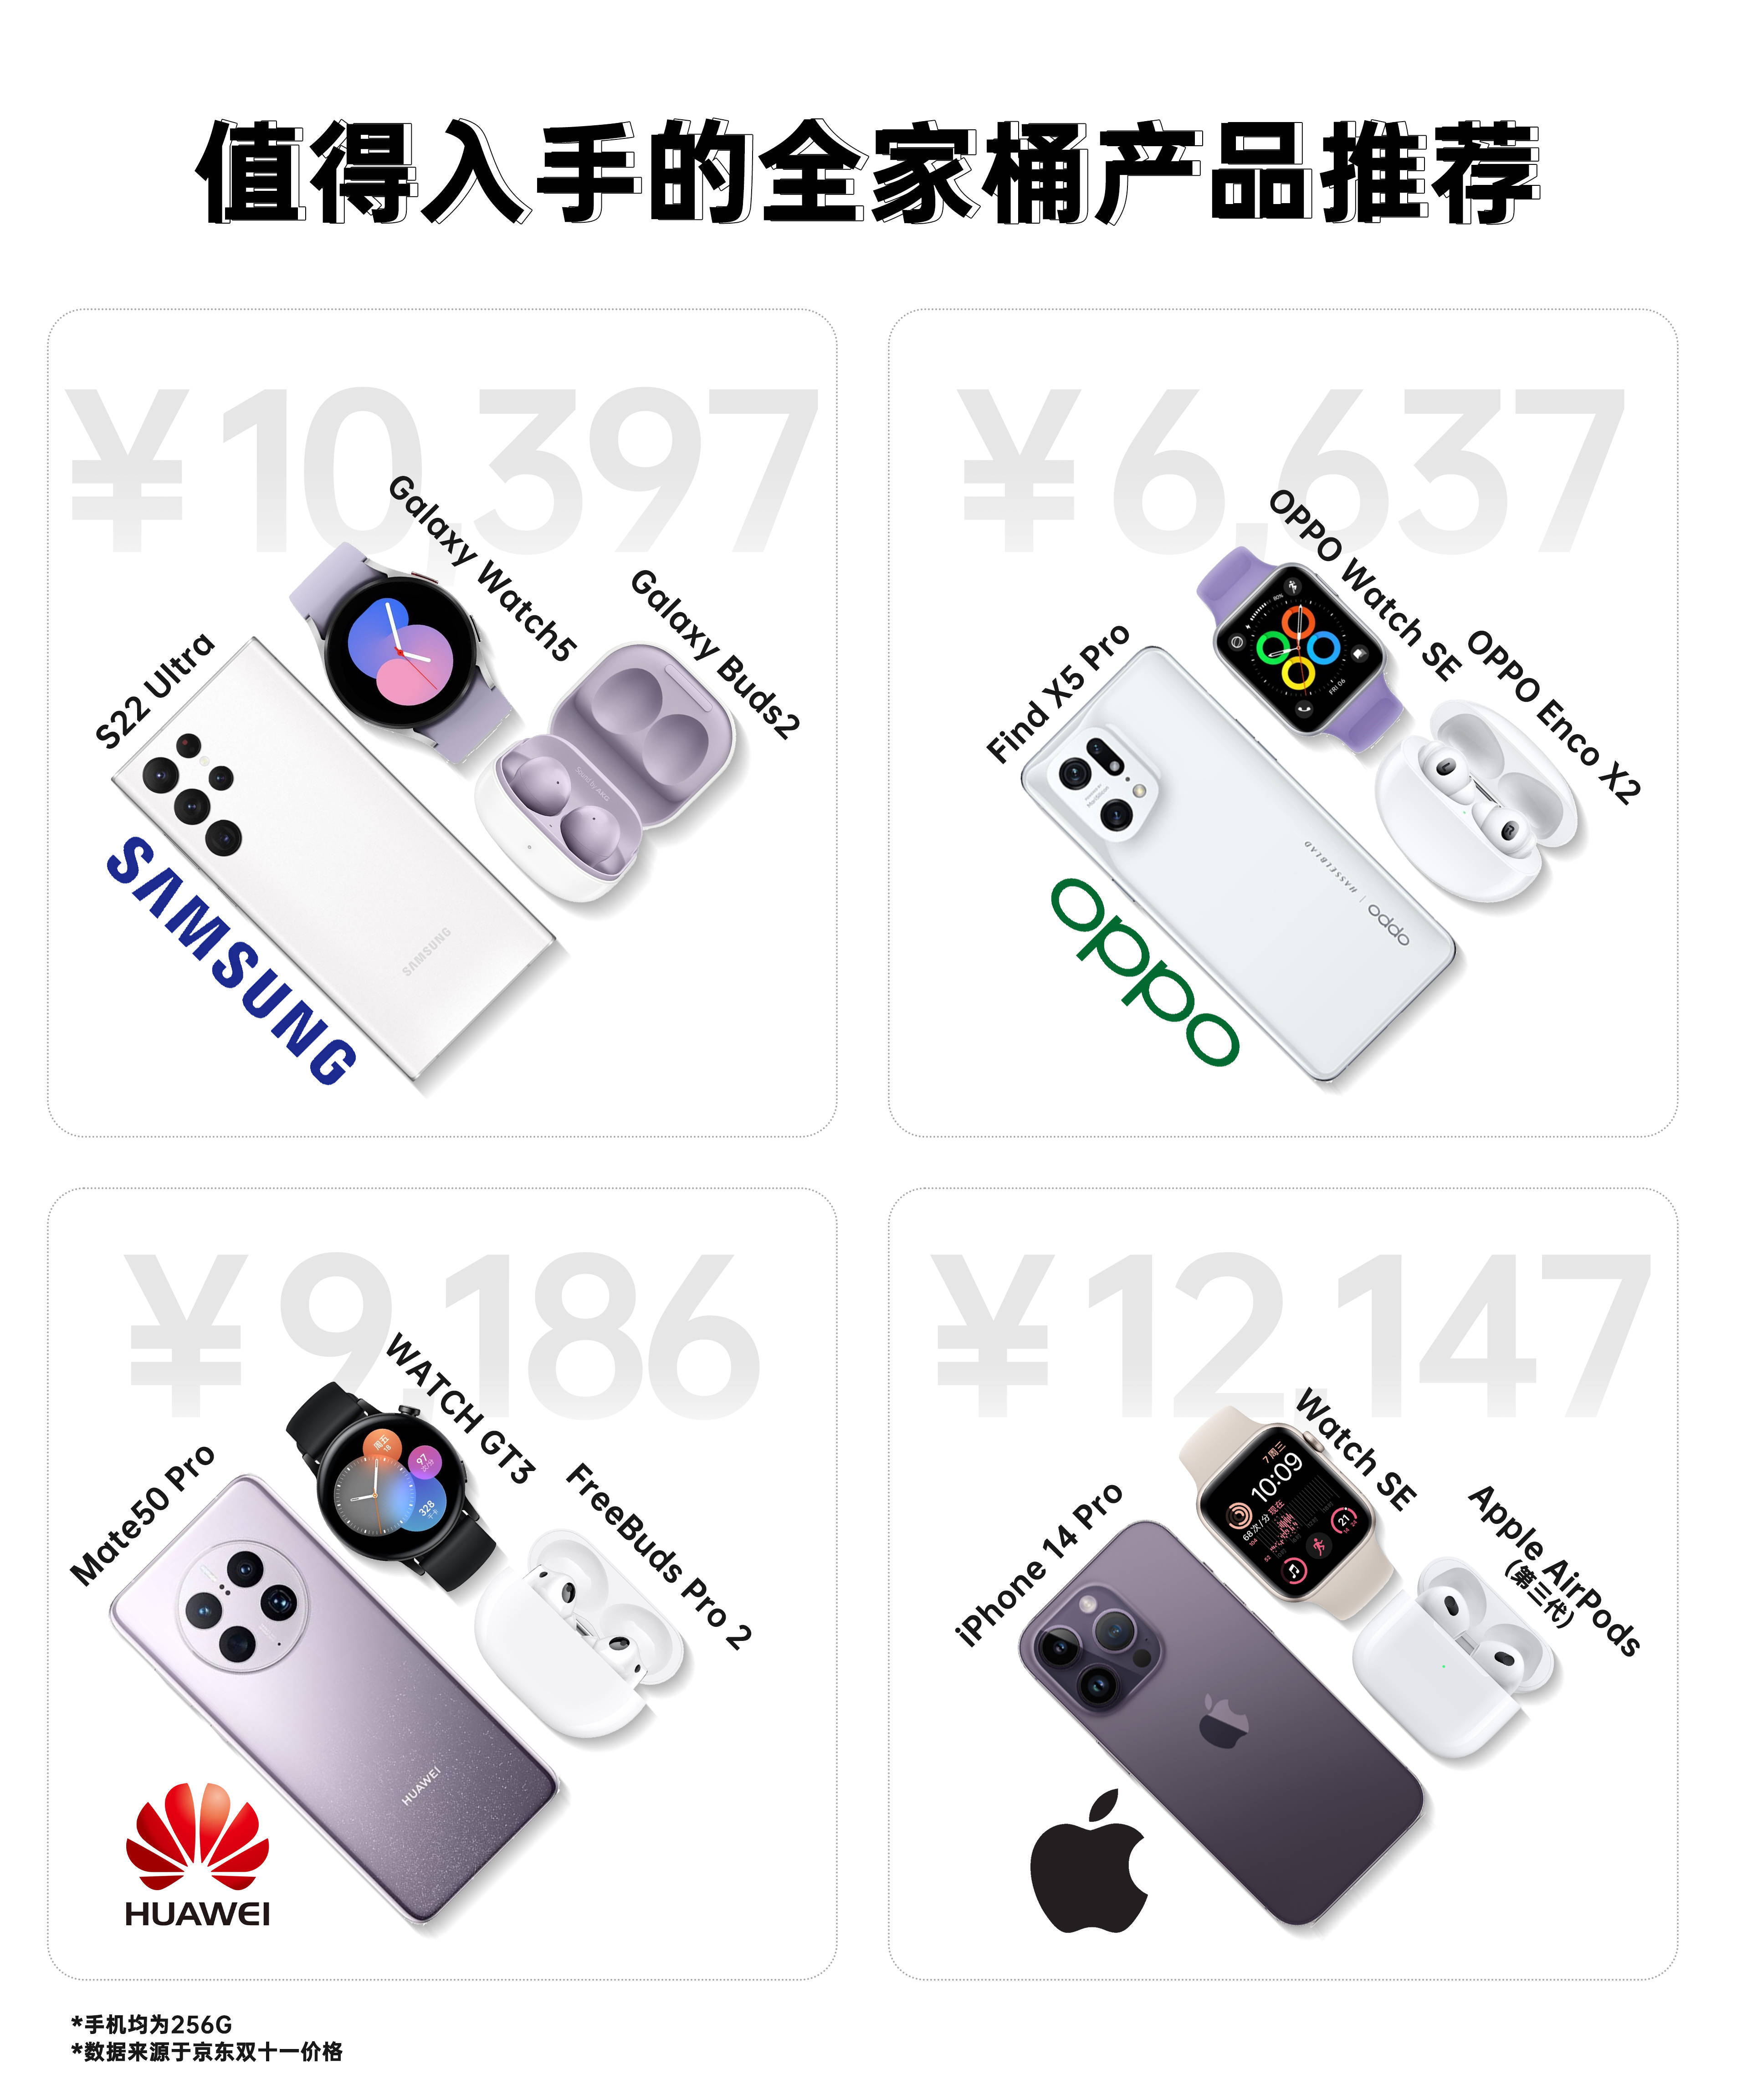 华为与opp手机哪个好:苹果、OPPO、三星、华为四个品牌的全家桶，你会选择哪个品牌的？